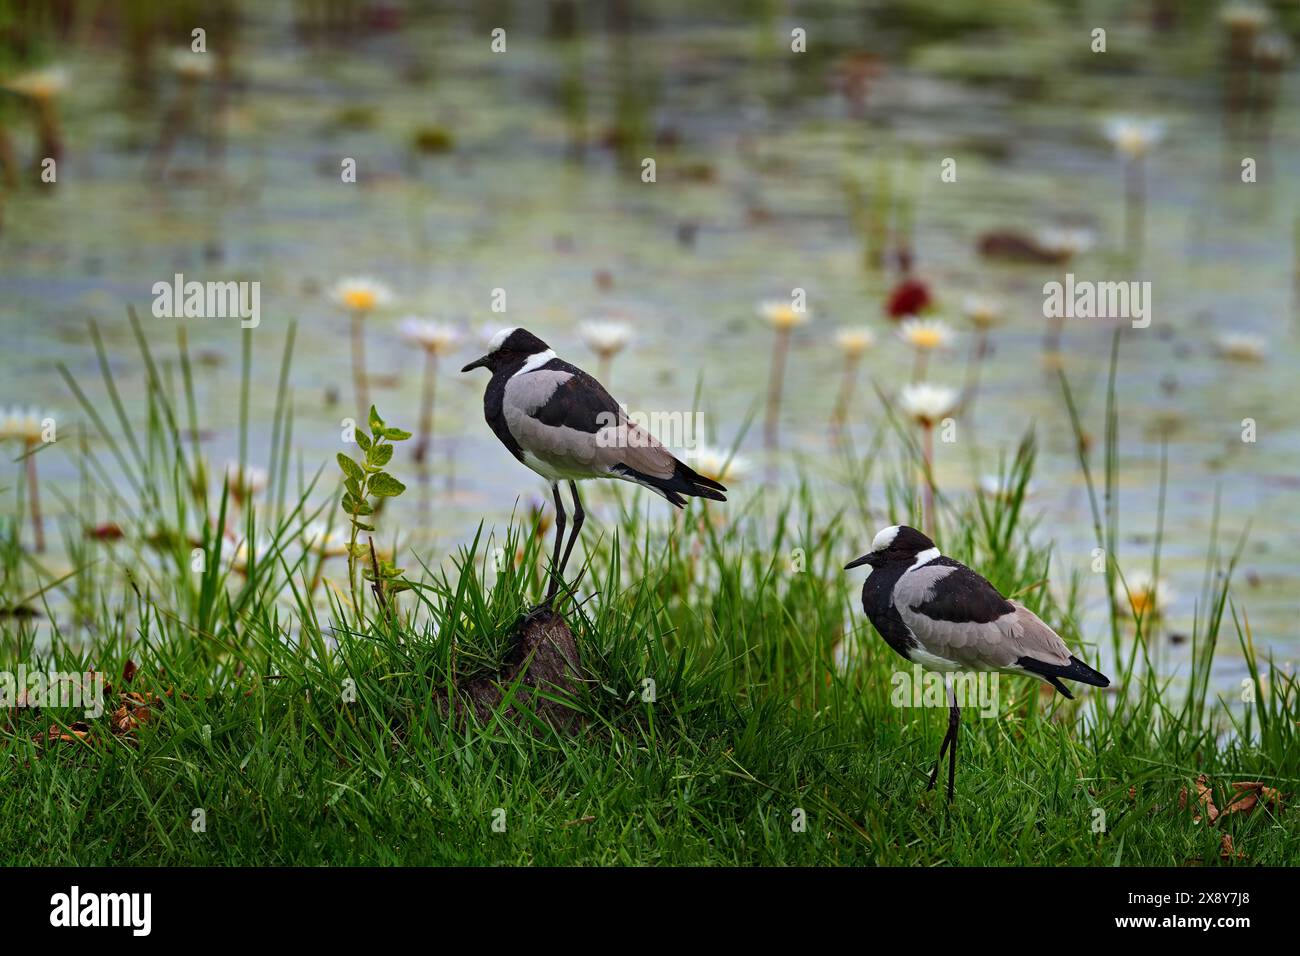 Fabbro o fabbro plover, Vanellus armatus, uccello in erba verde, con fiore in acqua, Moremi, delta dell'Okavango, Botswana. Natura selvaggia Foto Stock